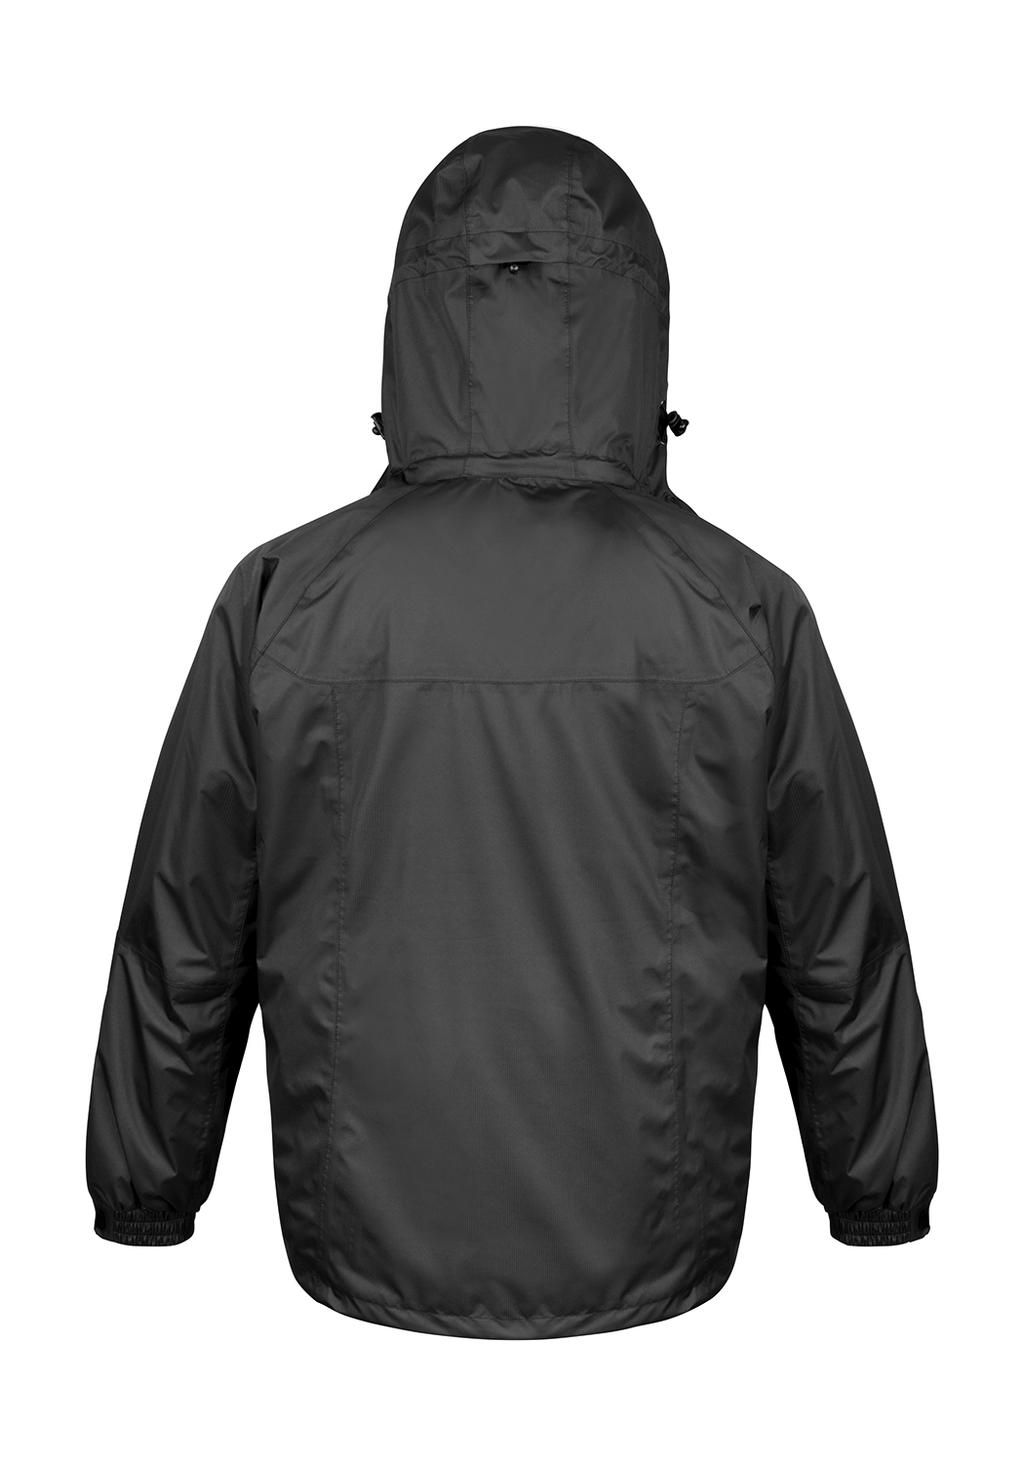  3-in-1 Journey Jacket in Farbe Black/Black